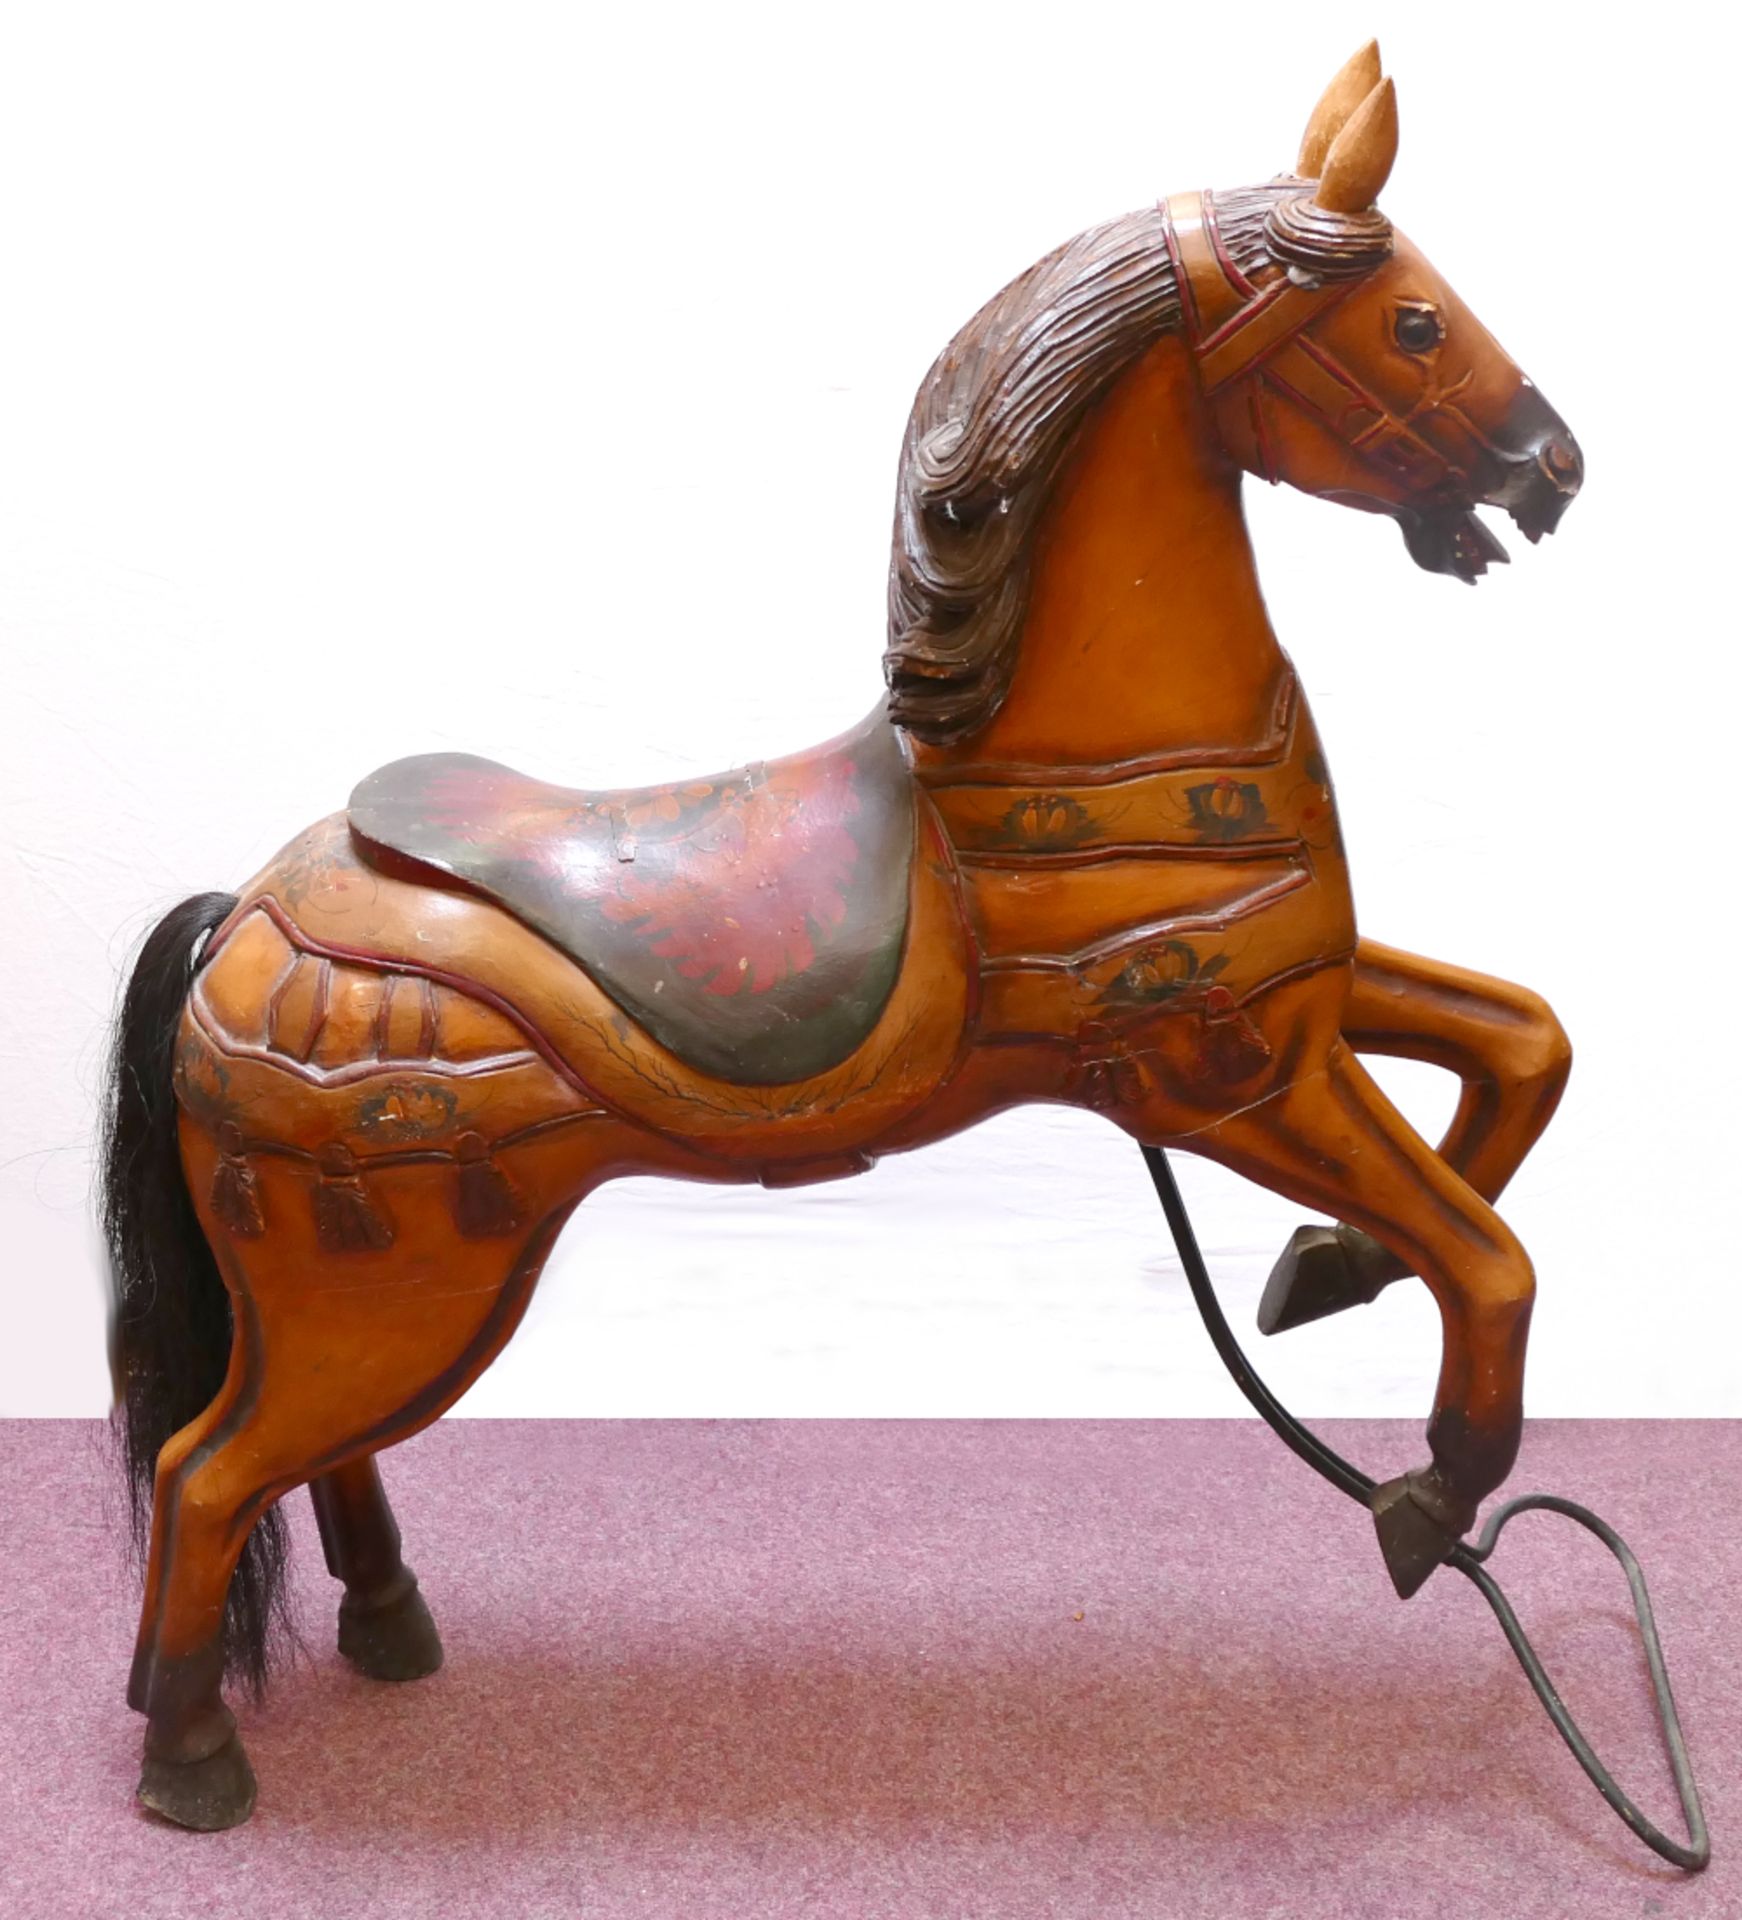 1 Deko-Karussellpferd 20. Jh., Holz bemalt, ca. 123x110x30cm, besch. (Abplatzungen, Risse, u.a.), As - Bild 2 aus 6